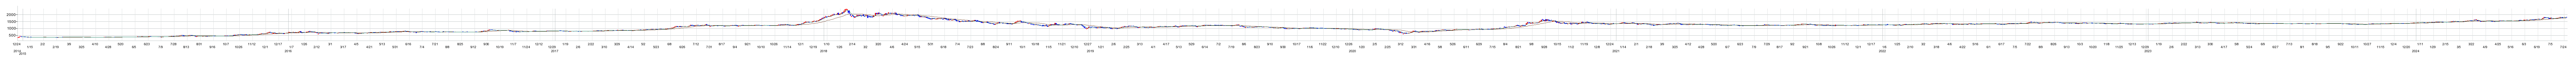 綿半ホールディングスの株価チャート